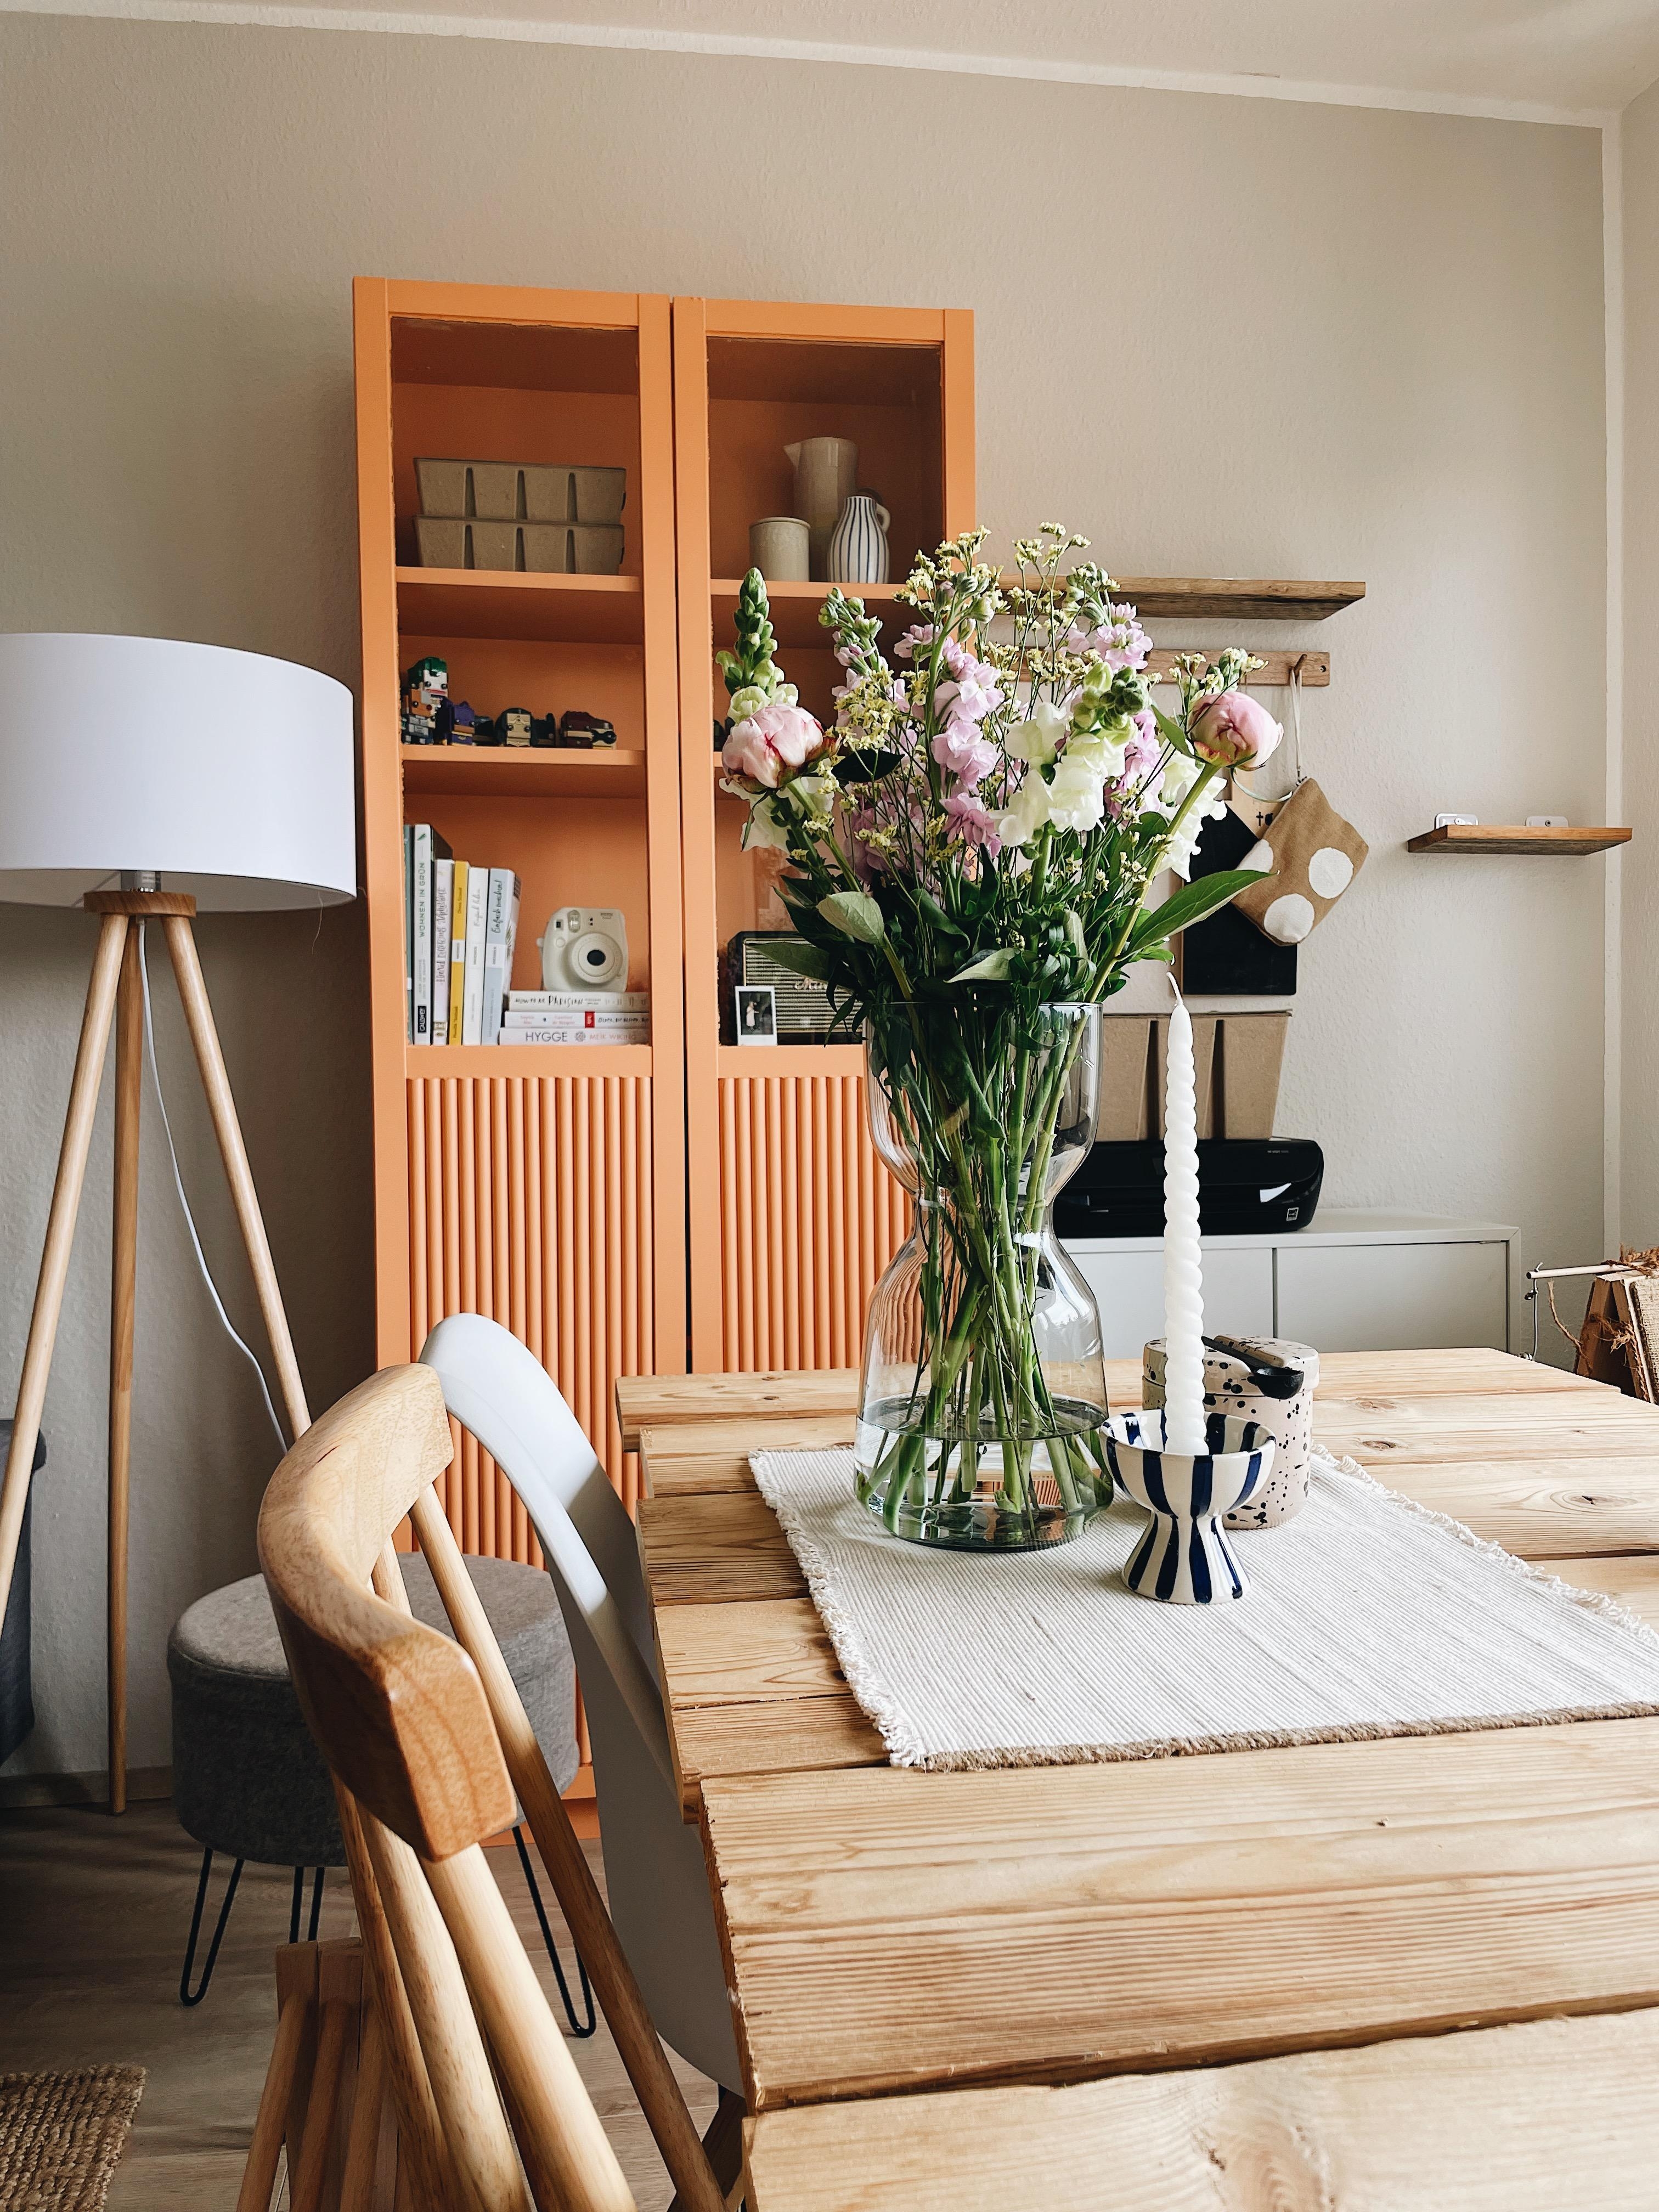 Frische Blumen und Pfirsich farbener Schrank. Große Liebe 🧡
#wohnzimmer ##ikeahack #farbenfroh #couchstyle #diy 